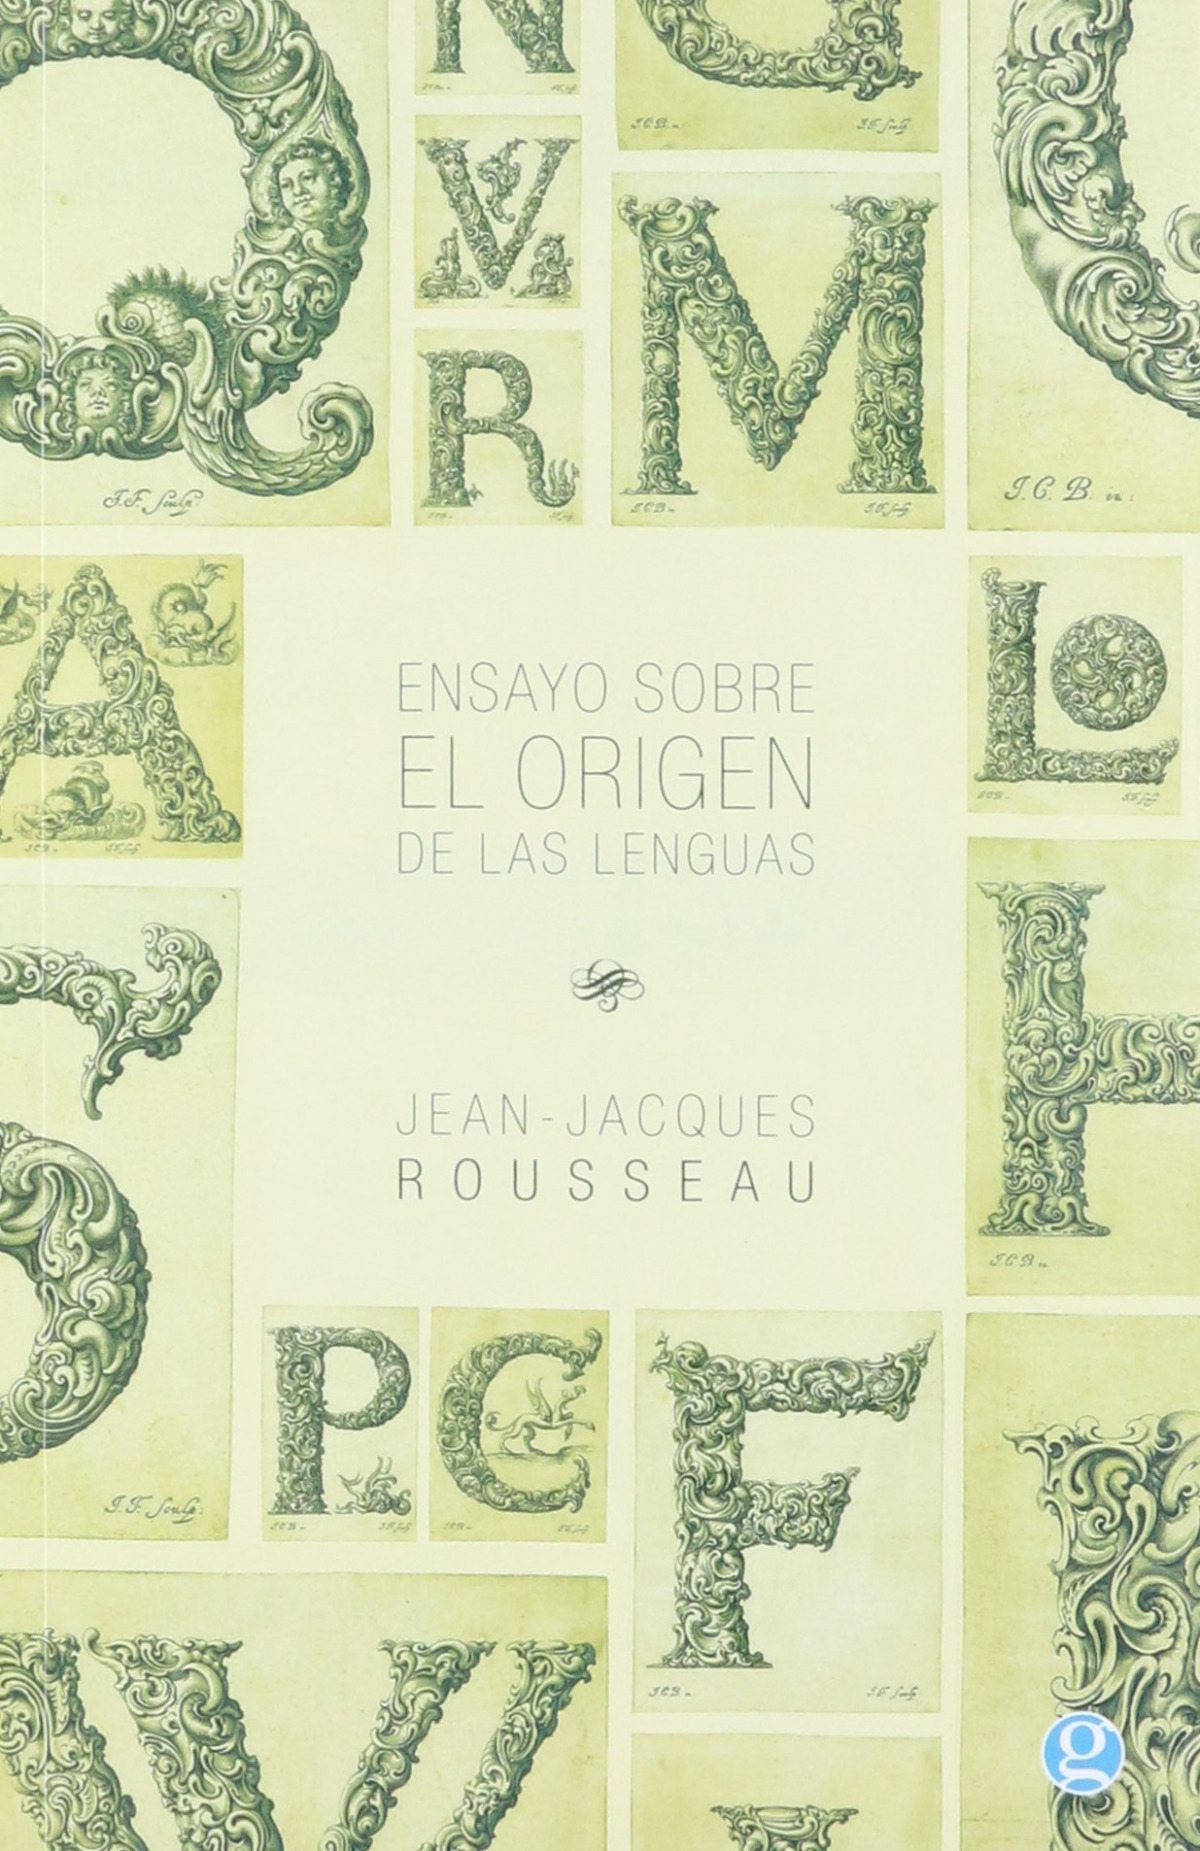 Ensayo sobre el origen de las lenguas - Rousseau Jean-Jacques